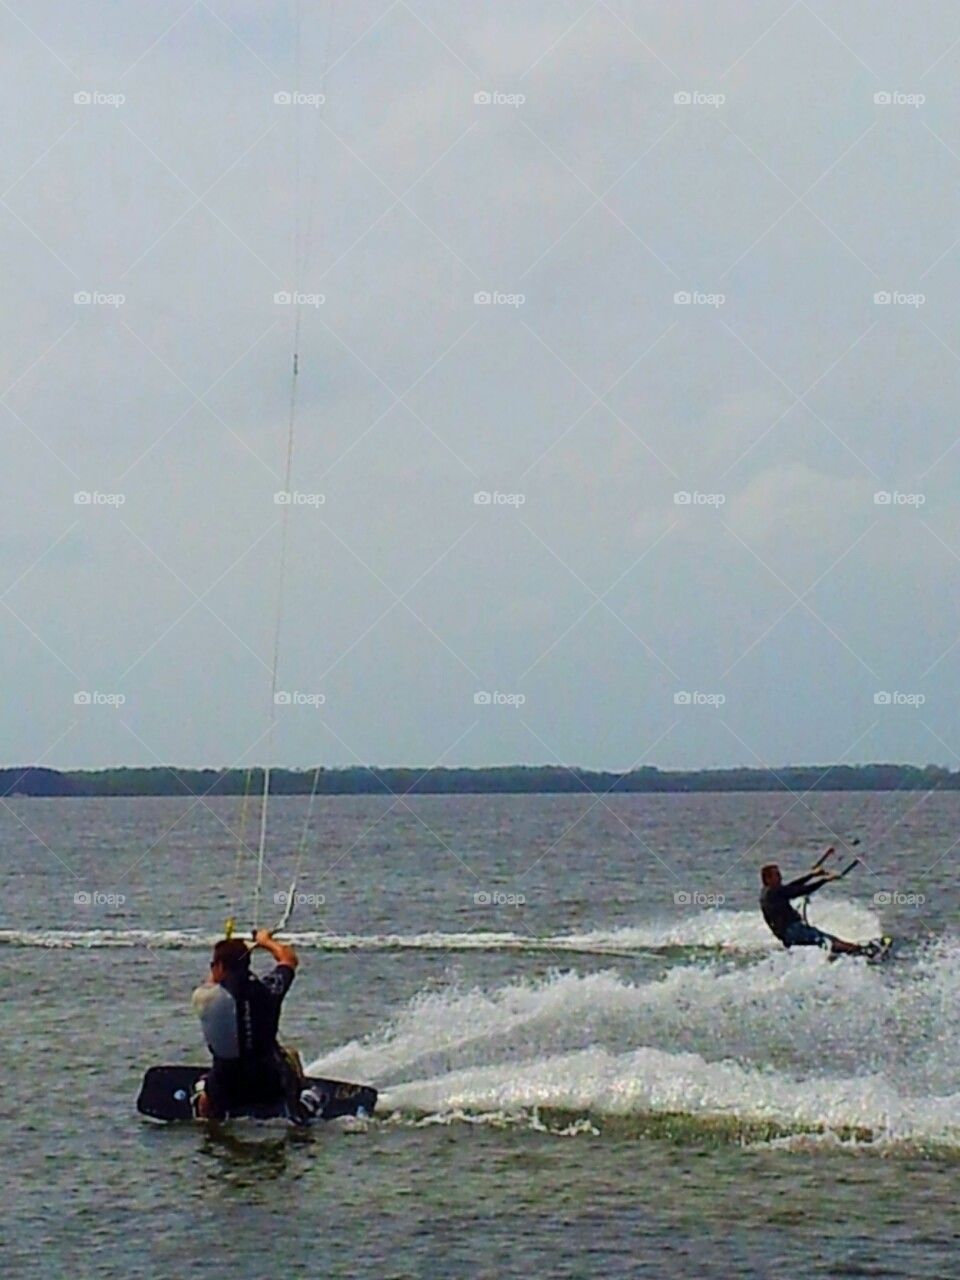 Kite boarders